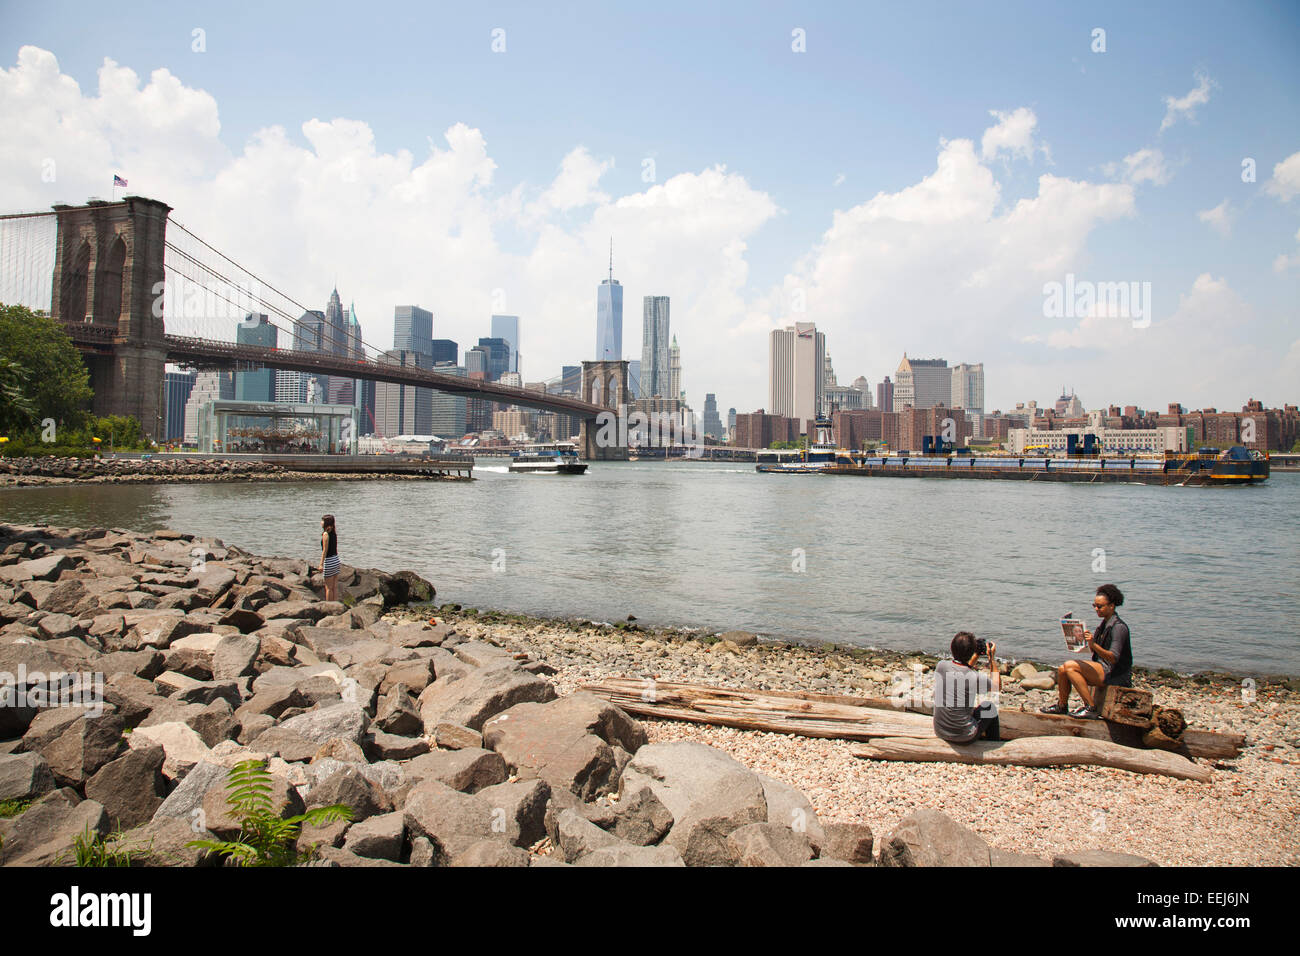 Pont de Brooklyn et la ville, East River, New York, USA, Amérique Latine Banque D'Images